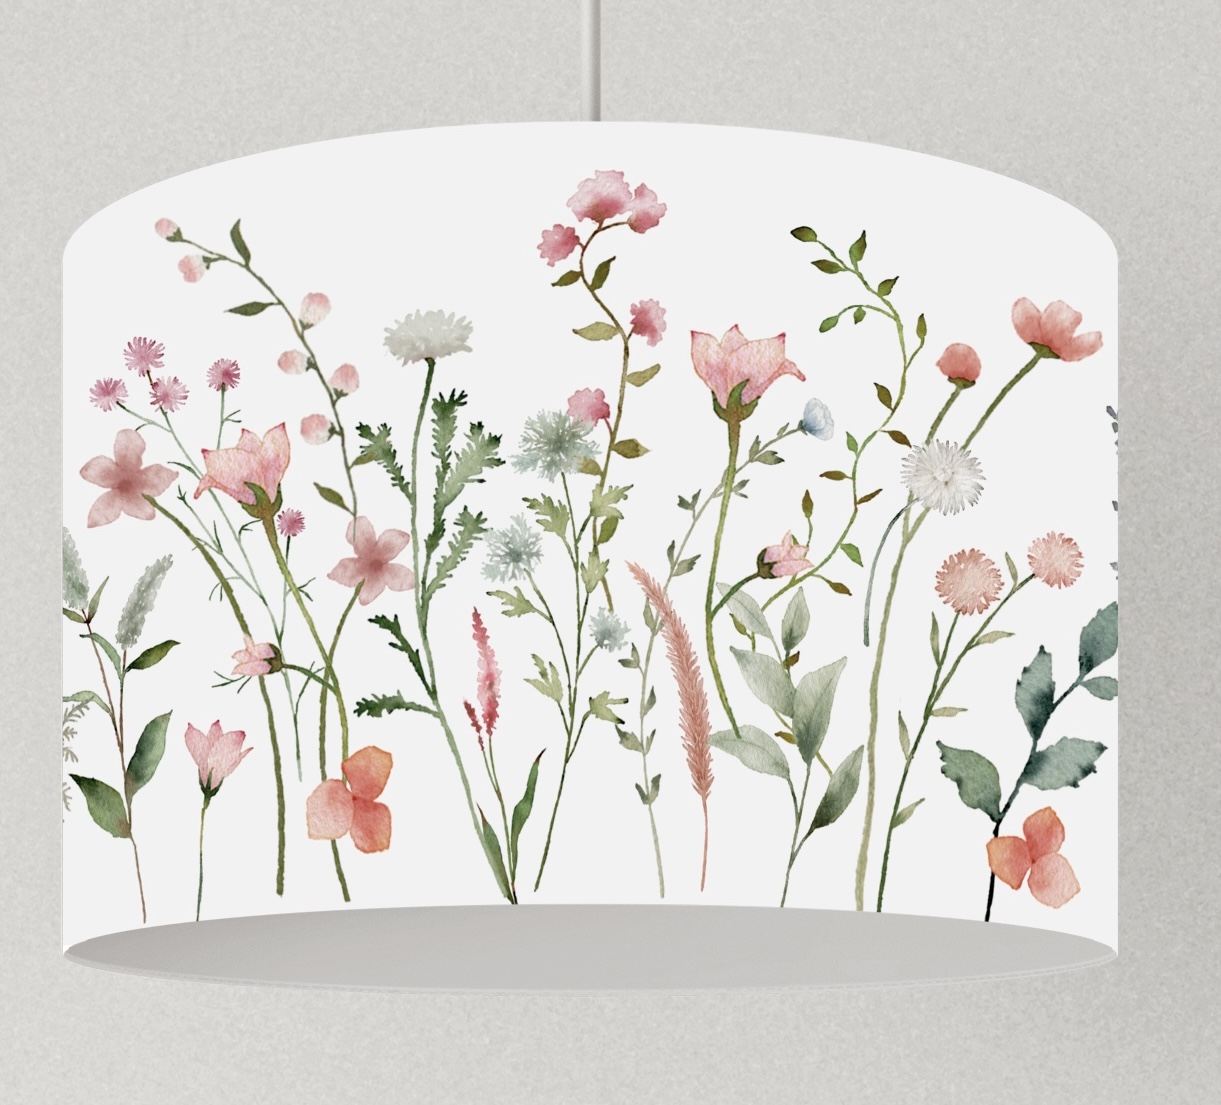 Lampe Blumen rosa, Lampenschirm floral, Hängelampe Wildblumen